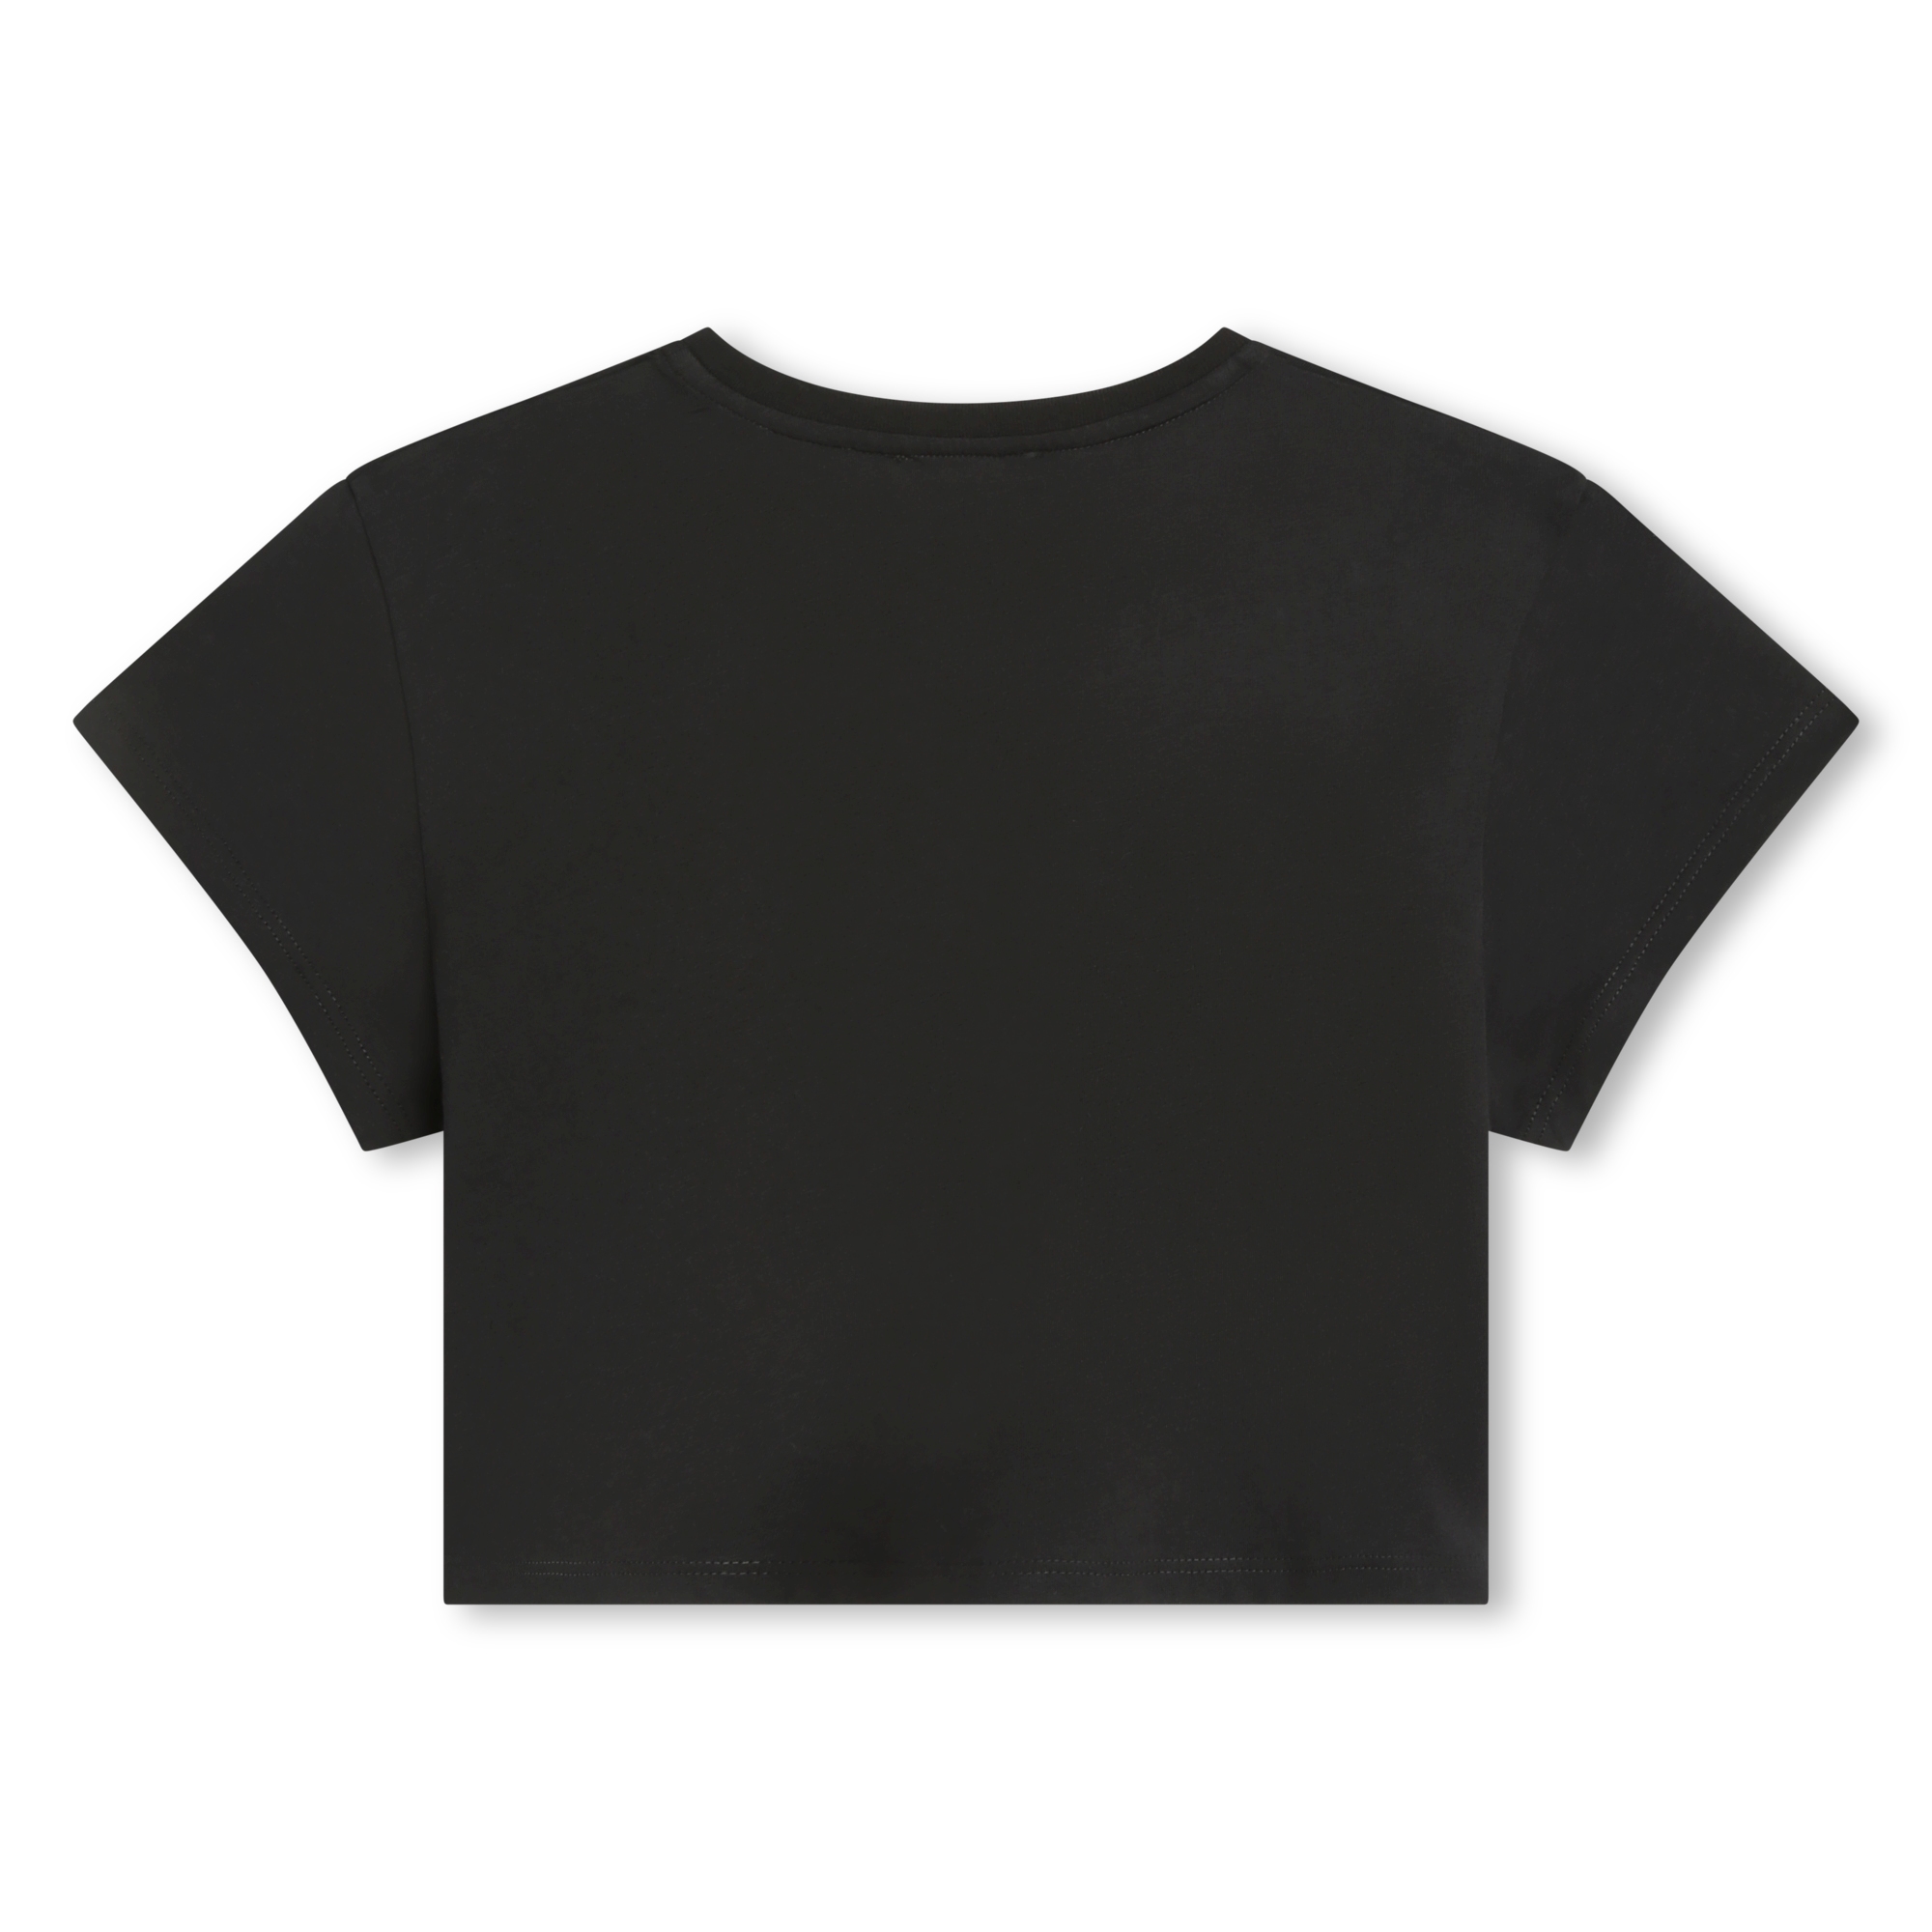 T-shirt a maniche corte cotone CHLOE Per BAMBINA